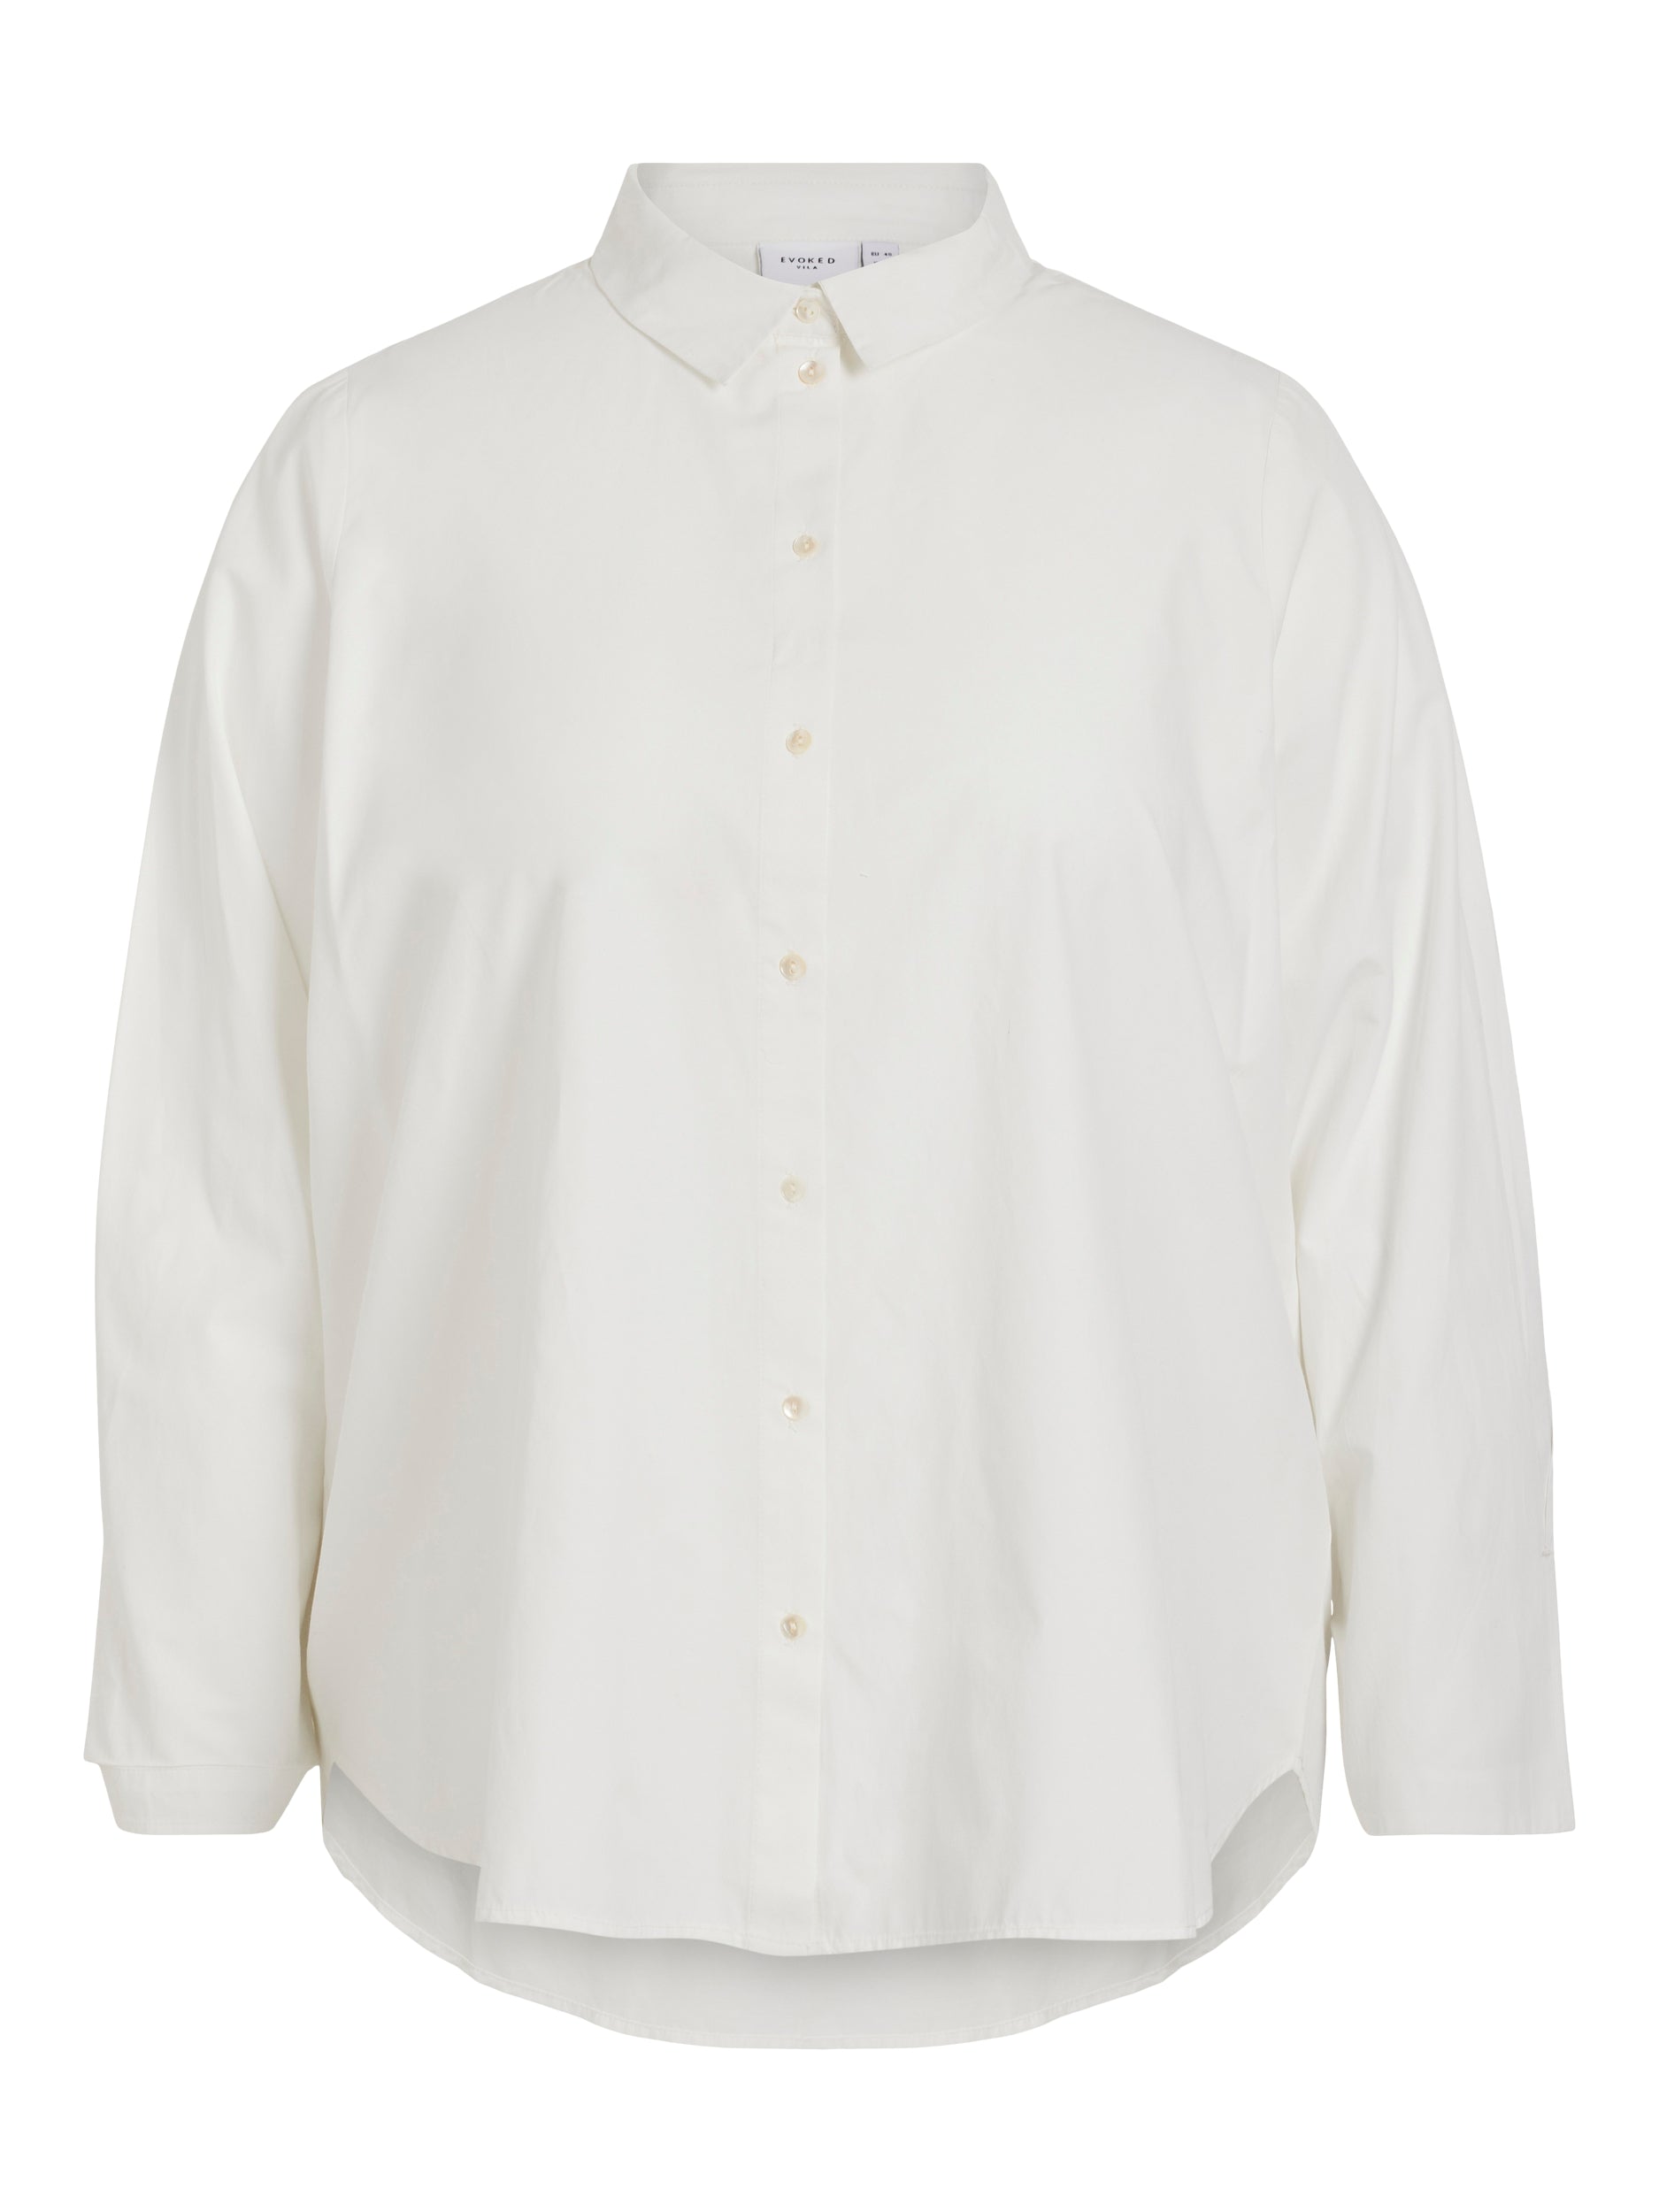 Vicassie shirt - Bright white